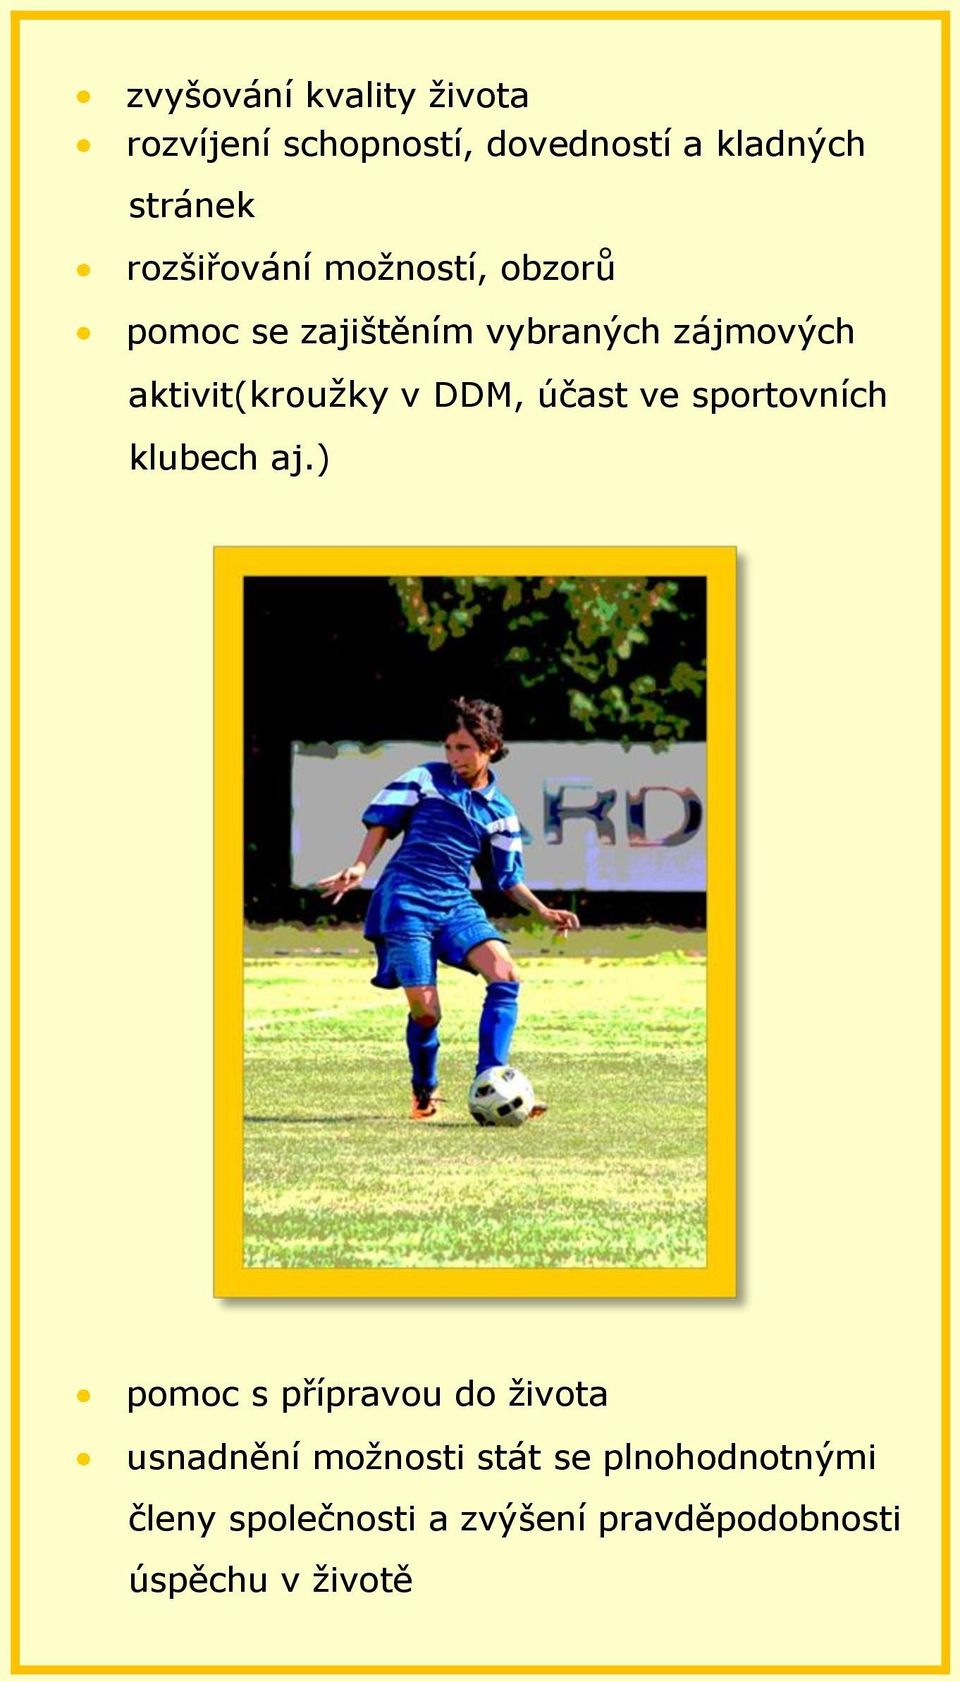 aktivit(kroužky v DDM, účast ve sportovních klubech aj.